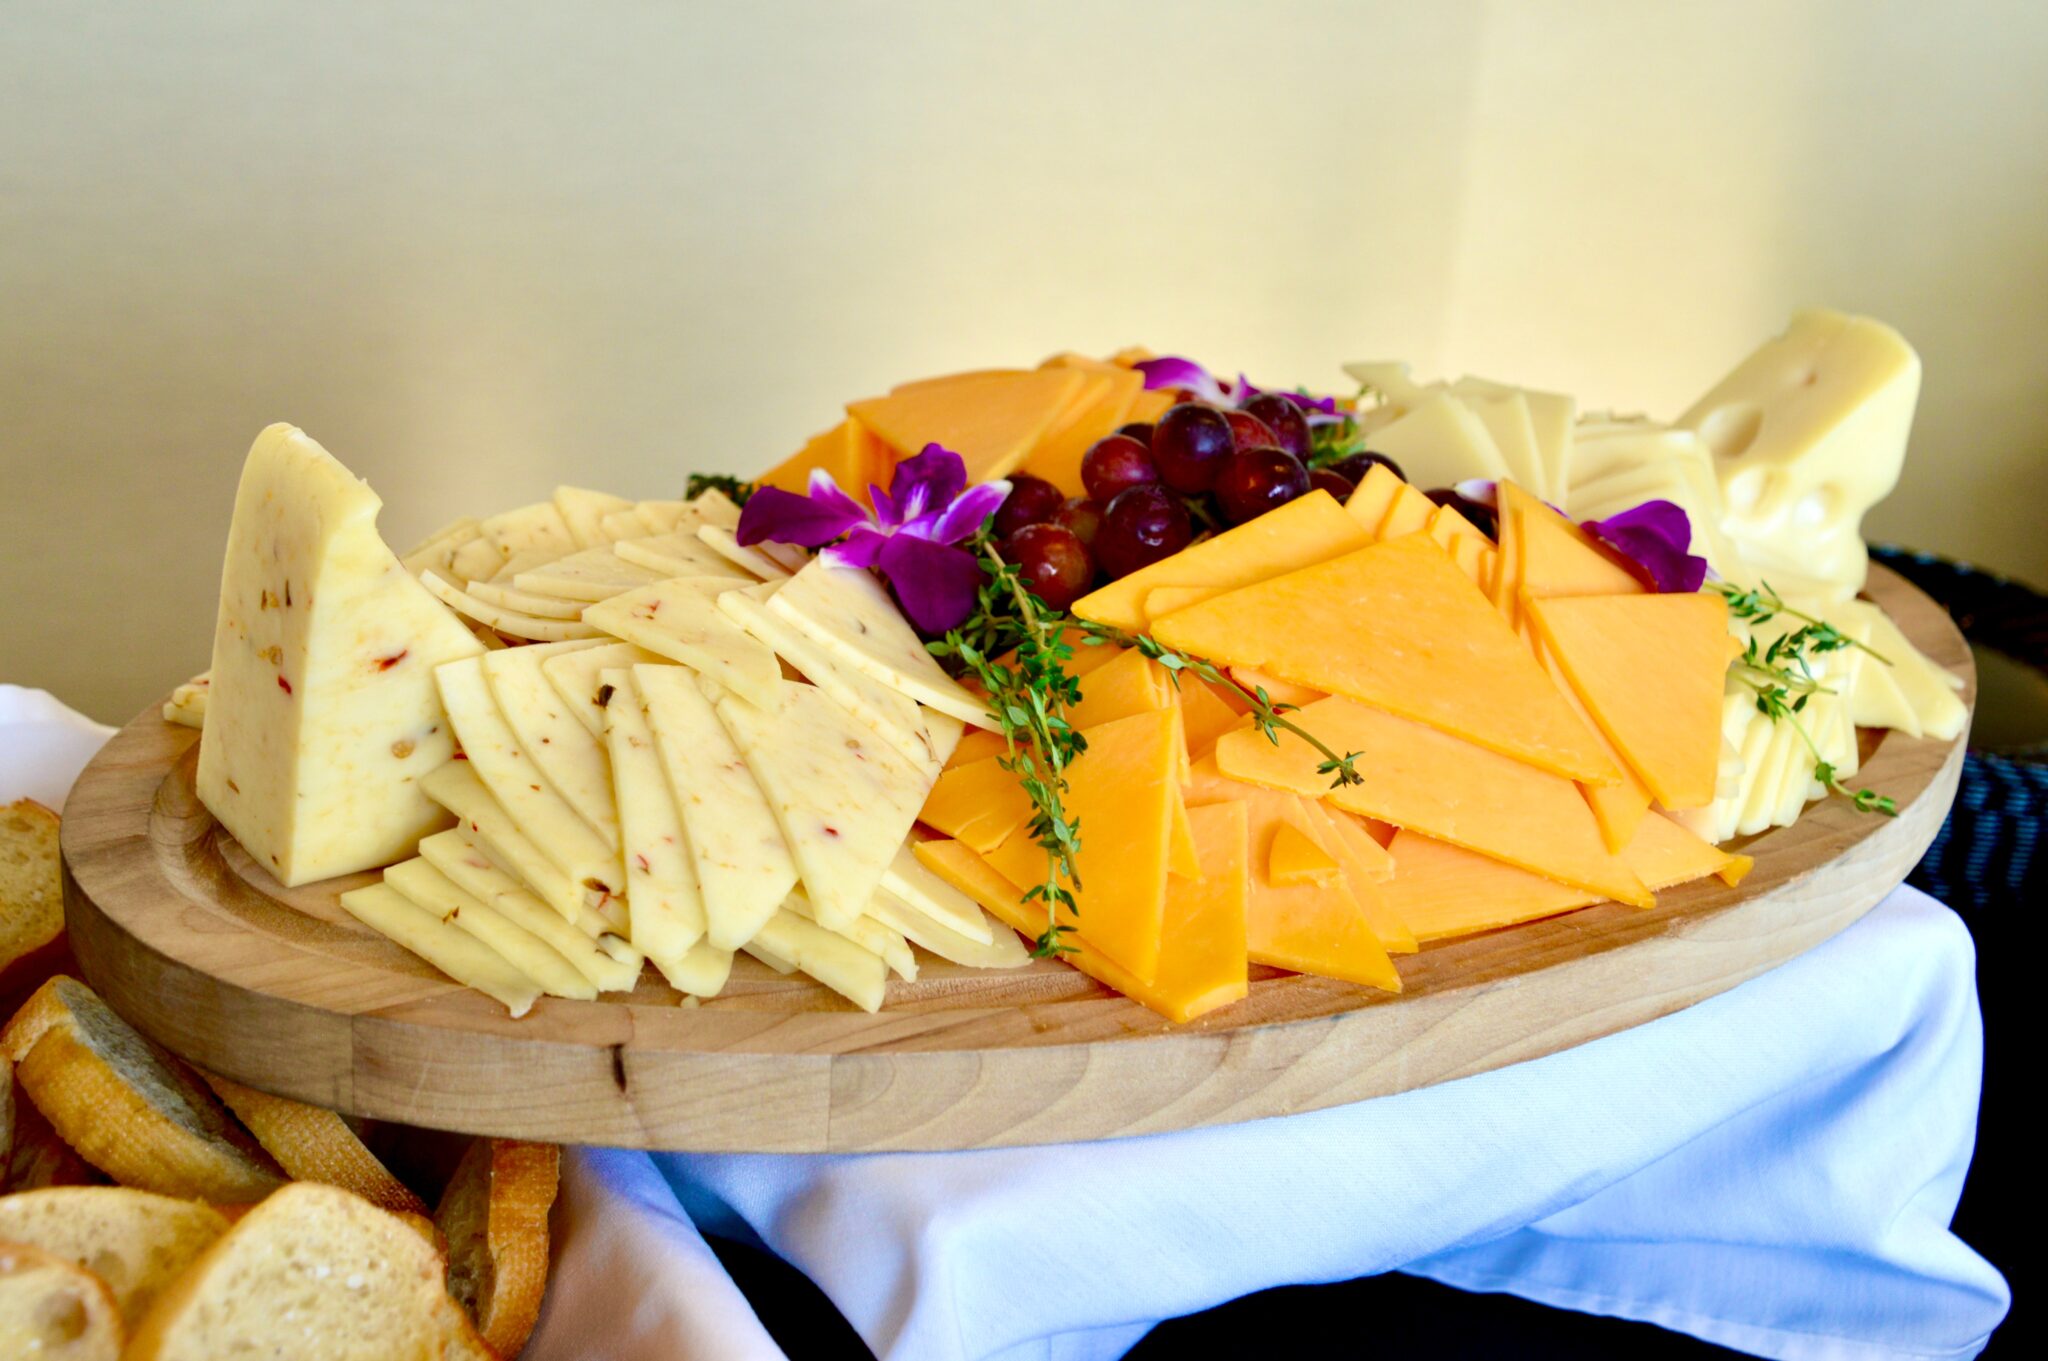 Le plateau de fromage: comment le composer et en réussir la